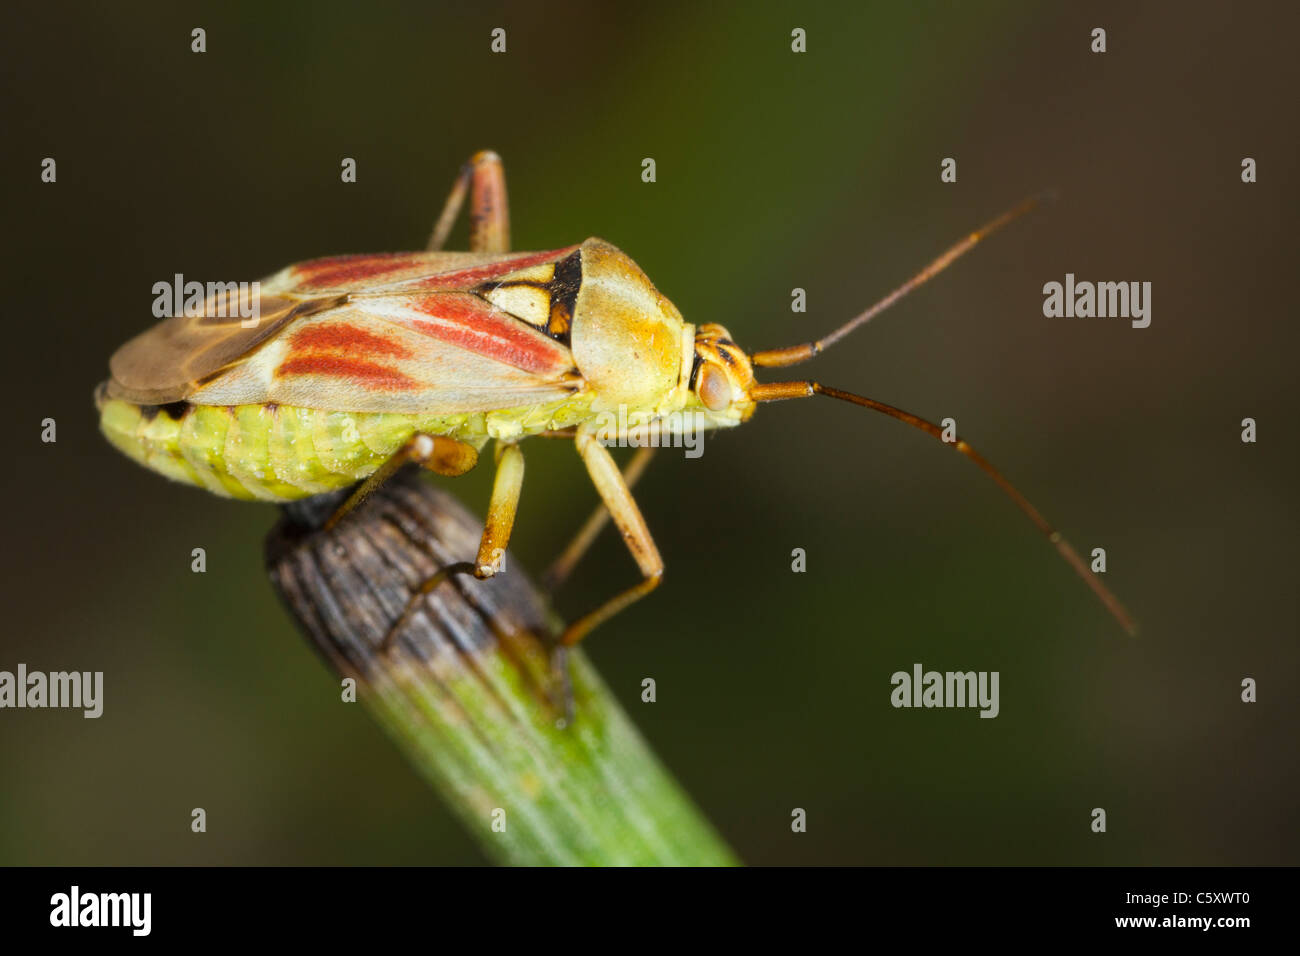 Calocoris roseomaculatus, a beautiful mirid bug Stock Photo